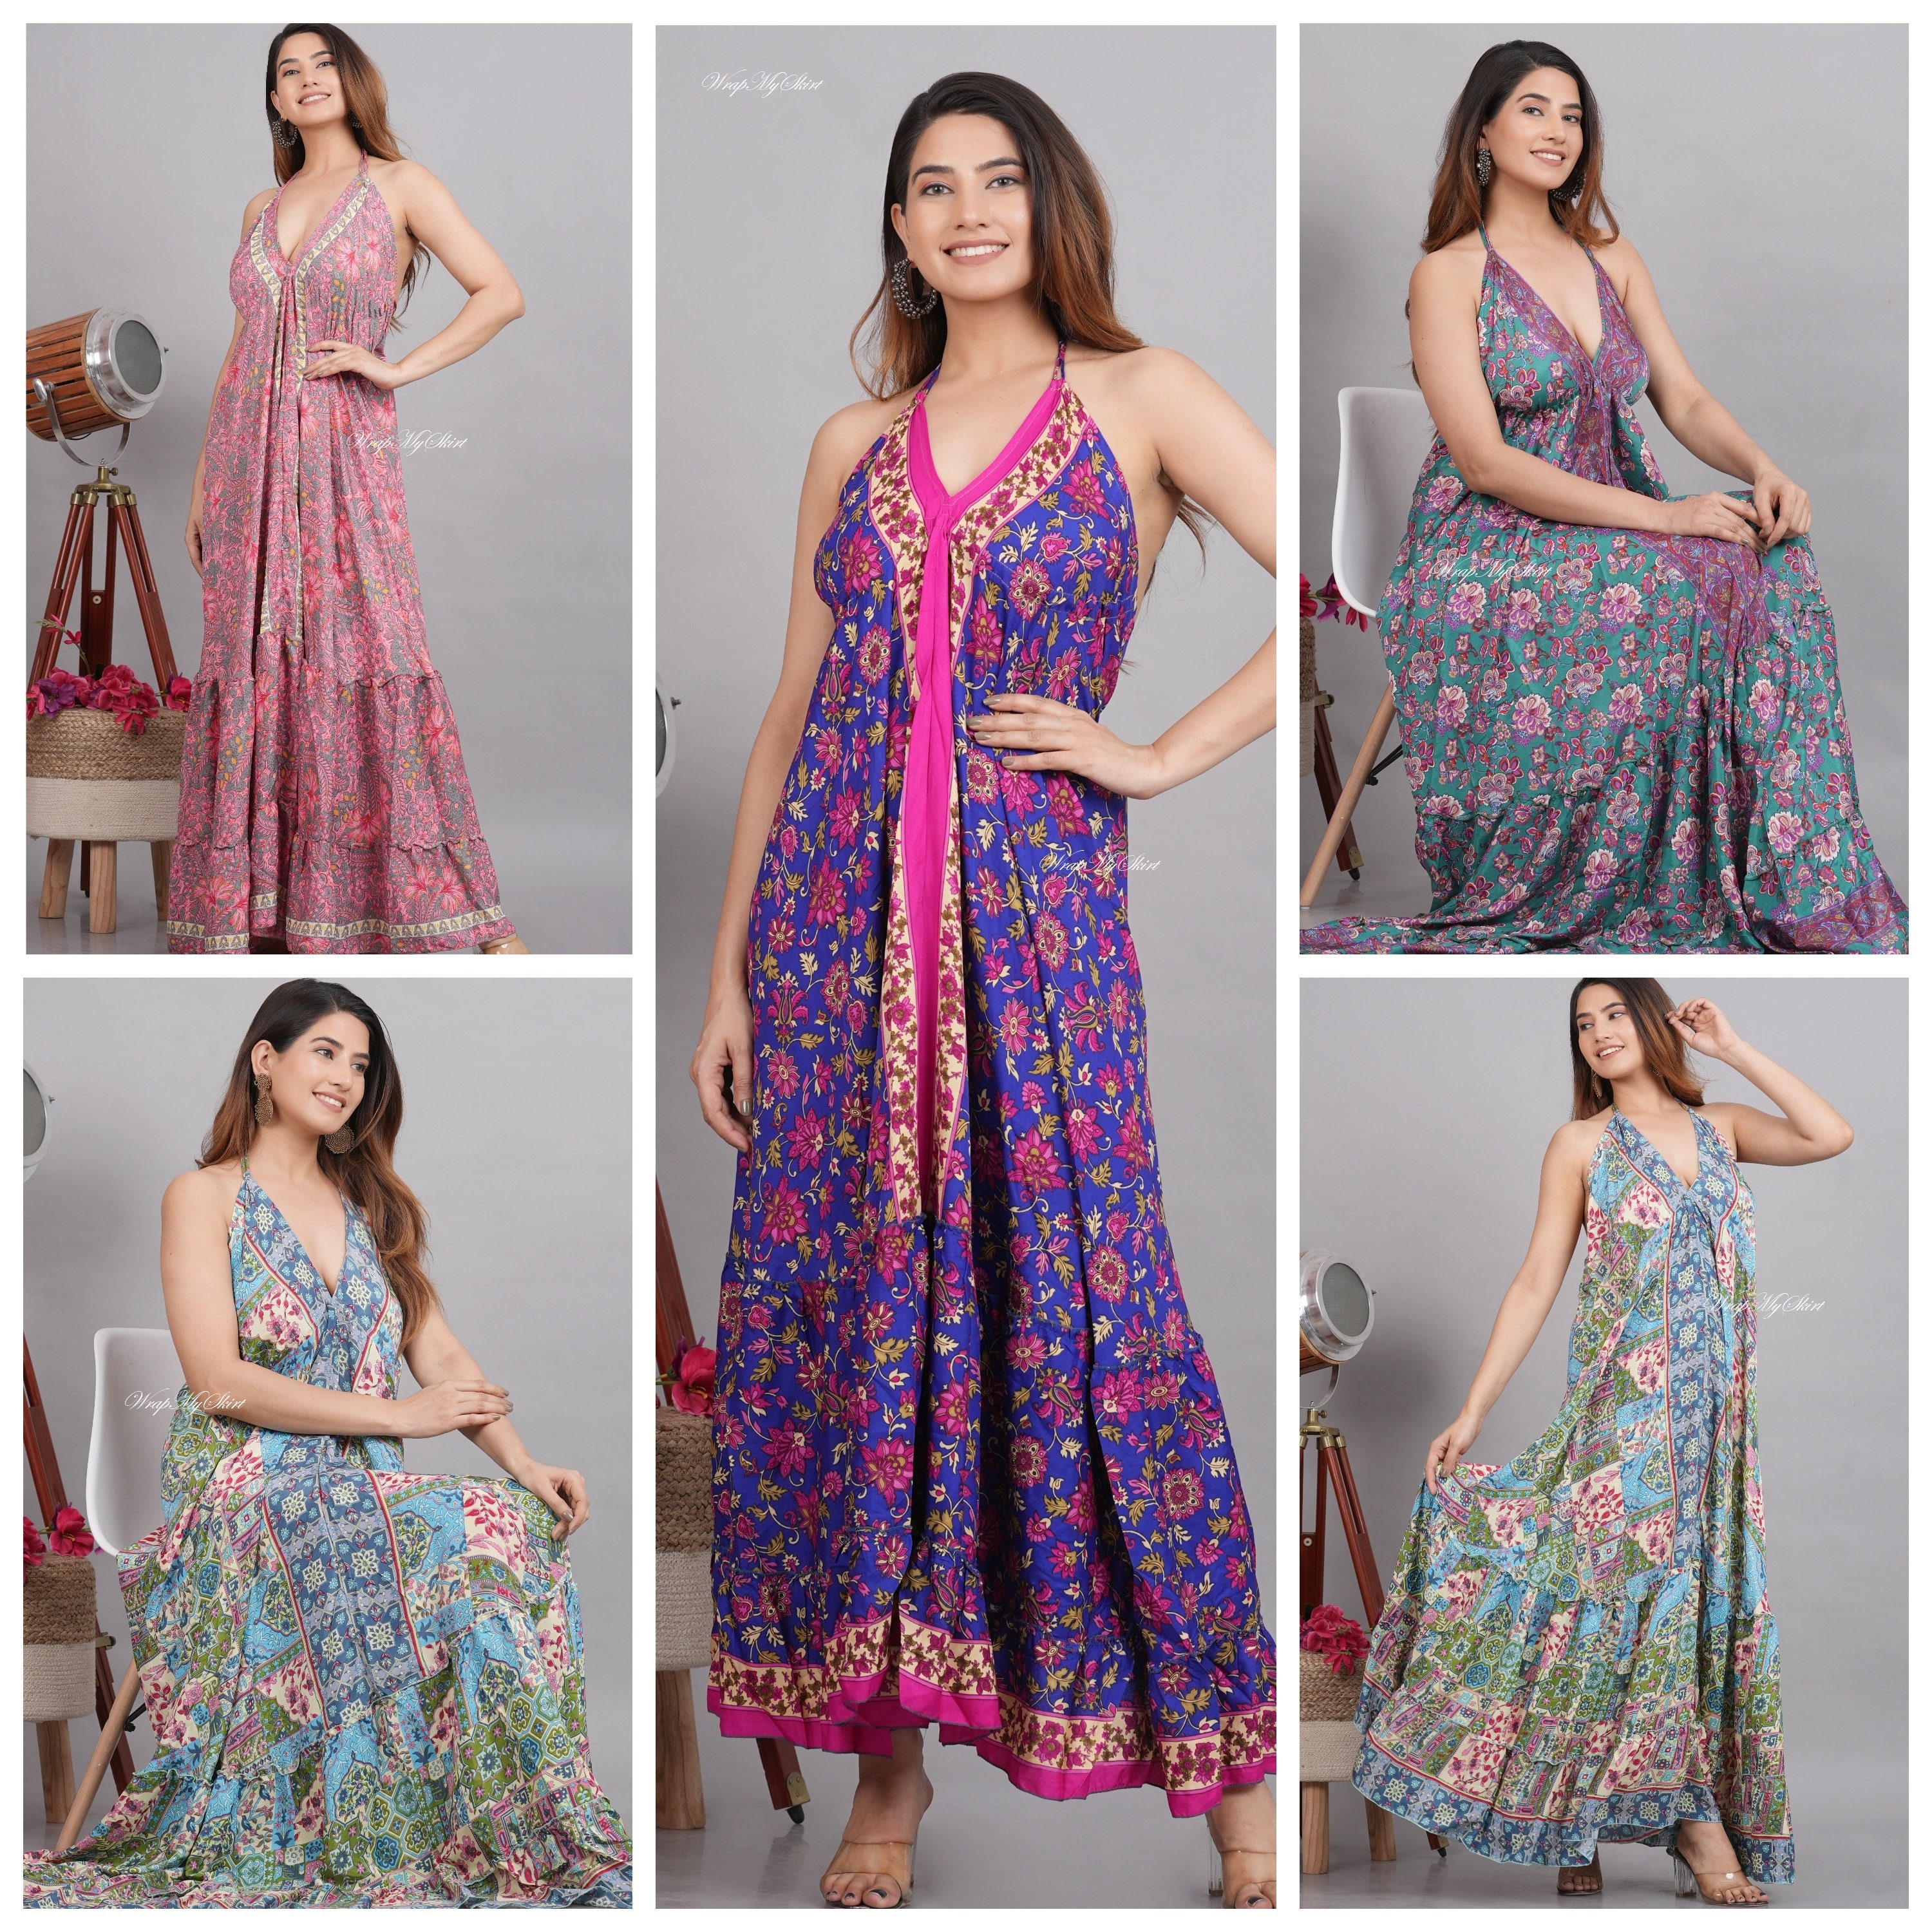 Vintage Sari Recycled Sari Sari Fabric Sari Poly Silk Indian Women